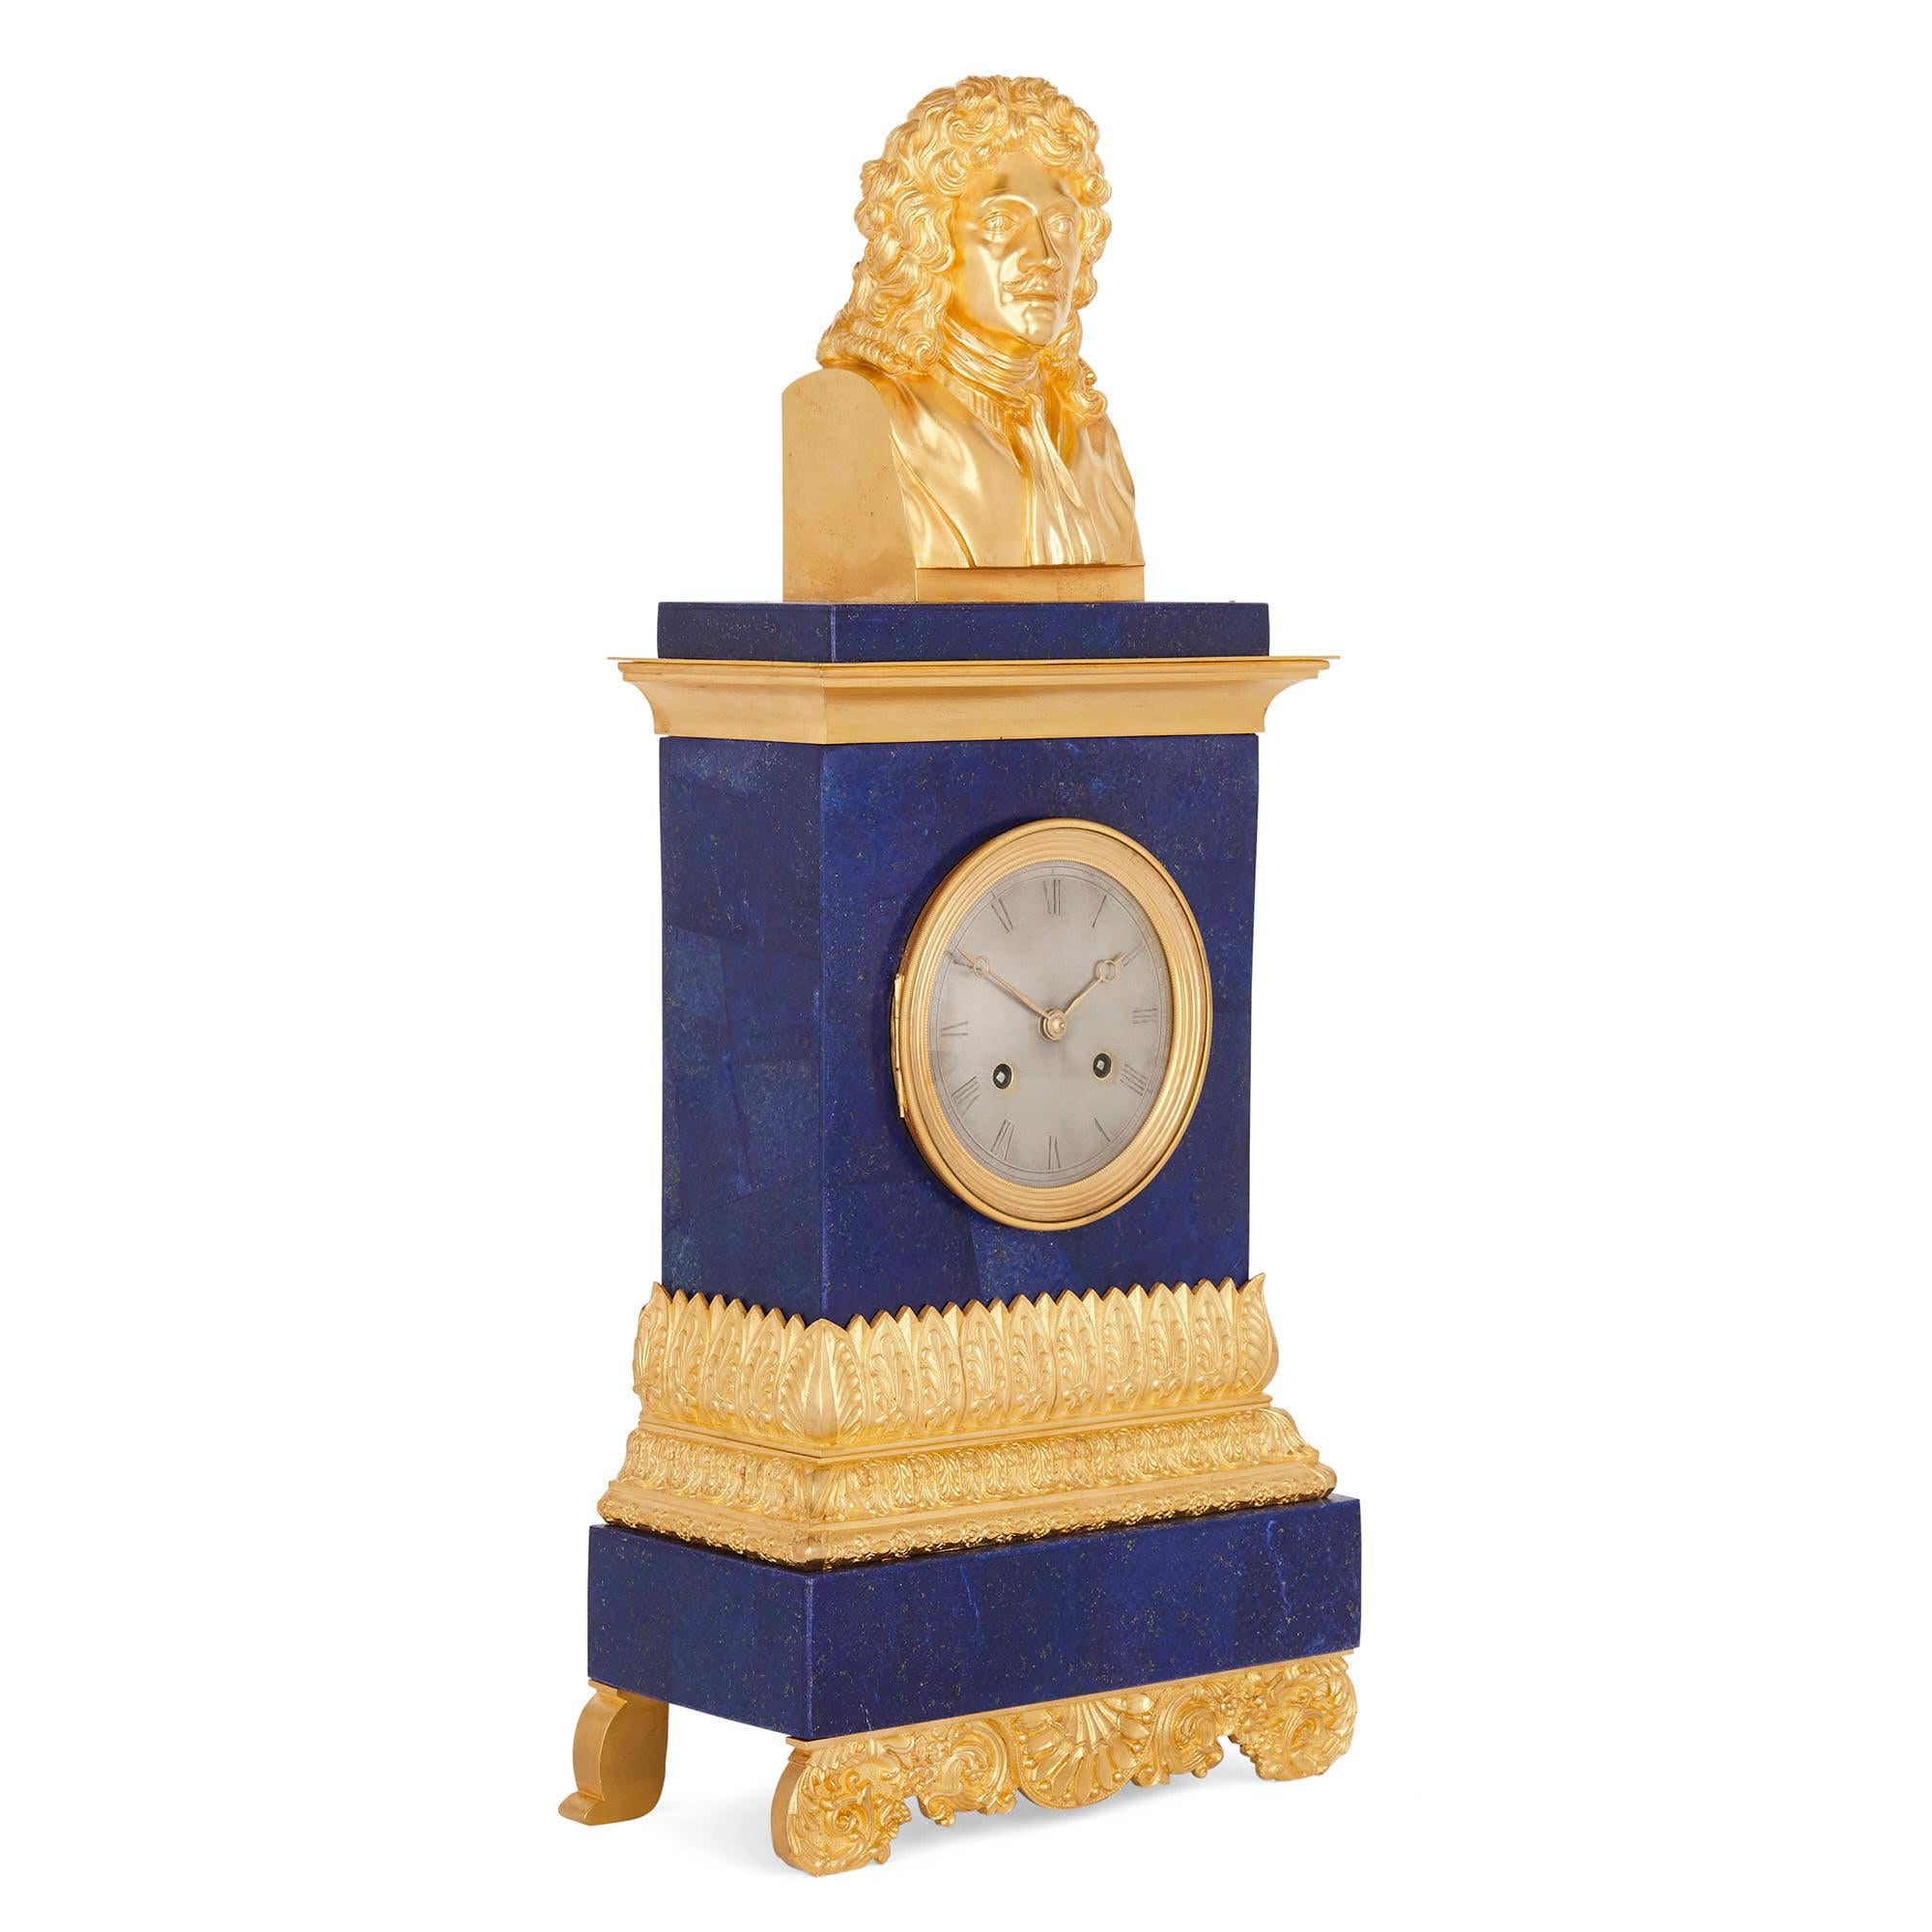 Eine Uhr aus vergoldeter Bronze und blauem Lapislazuli mit einer Büste von Molière
Französisch, um 1830 
Maße: Höhe 61cm, Breite 27cm, Tiefe 13cm

Diese exquisite französische Kaminsimsuhr stammt aus der Zeit um 1830. In jüngerer Zeit wurde das